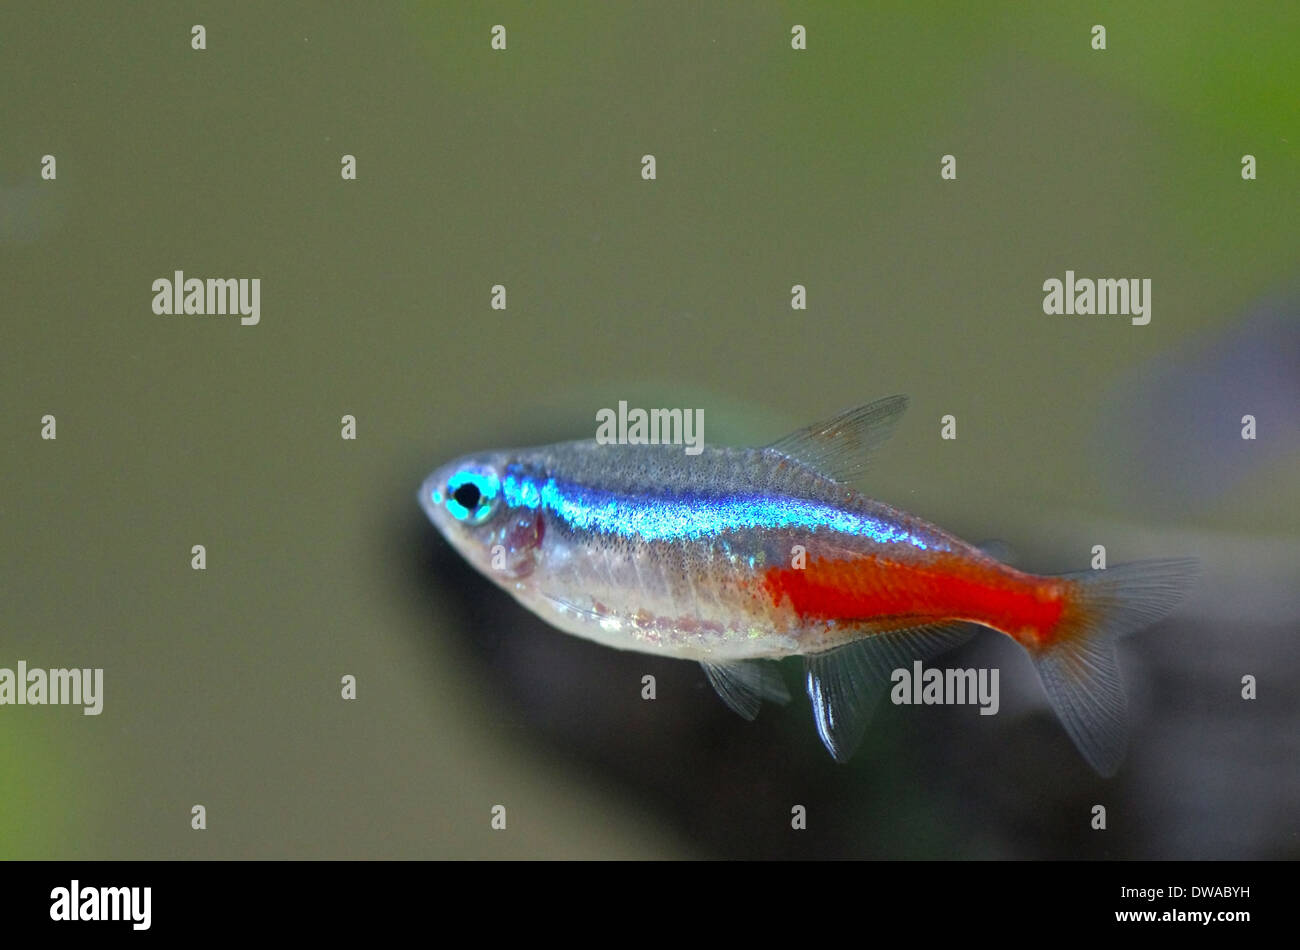 Close up image of neon fish in aquarium. Stock Photo